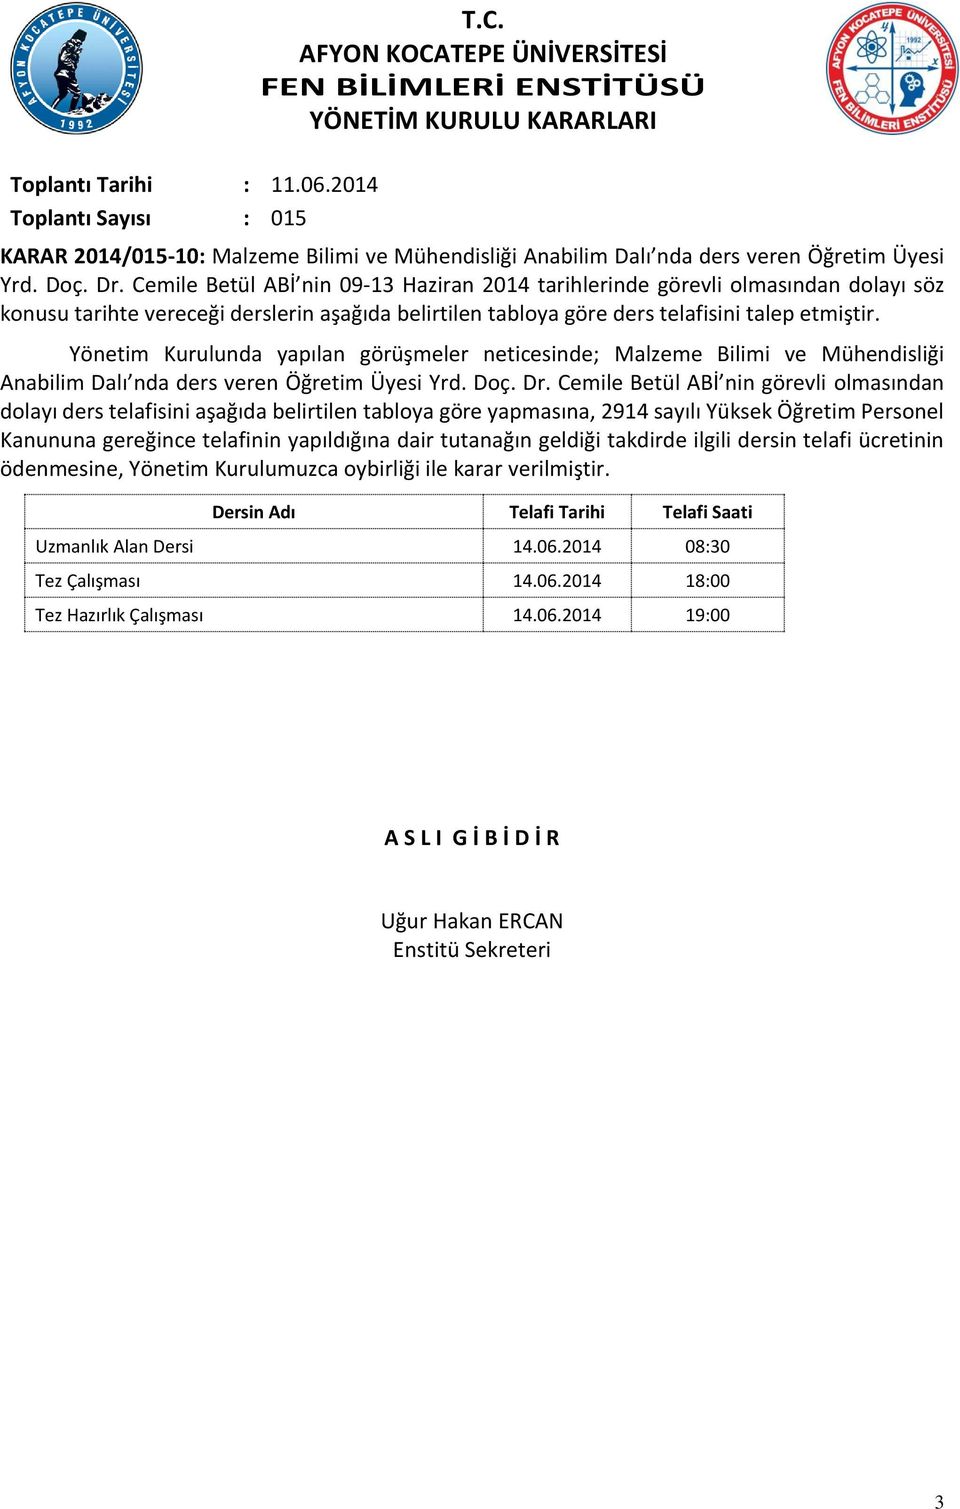 Cemile Betül ABİ nin 09-13 Haziran 2014 tarihlerinde görevli olmasından dolayı söz konusu tarihte vereceği derslerin aşağıda belirtilen tabloya göre ders telafisini talep etmiştir.